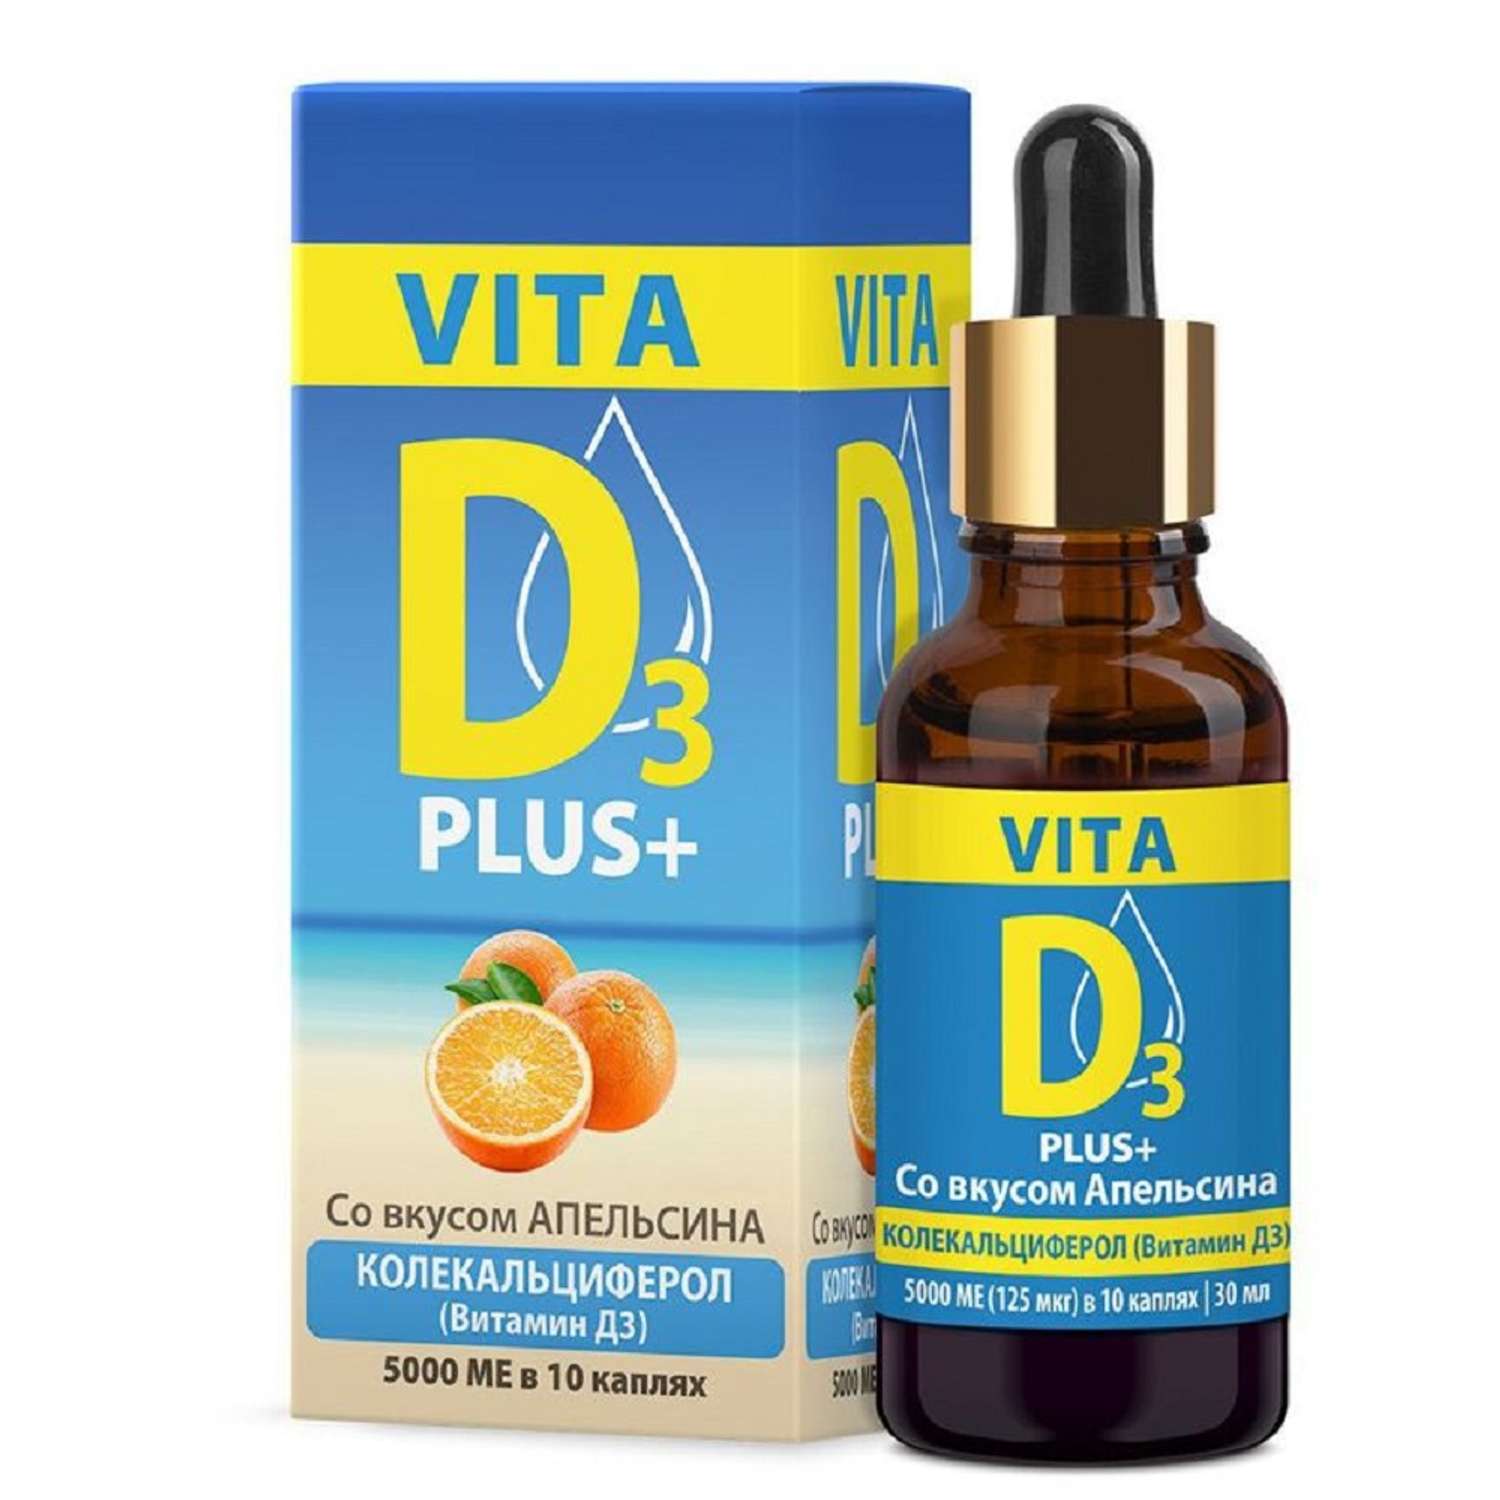 Витамин Д VITA D3 со вкусом апельсина 30 мл - фото 1